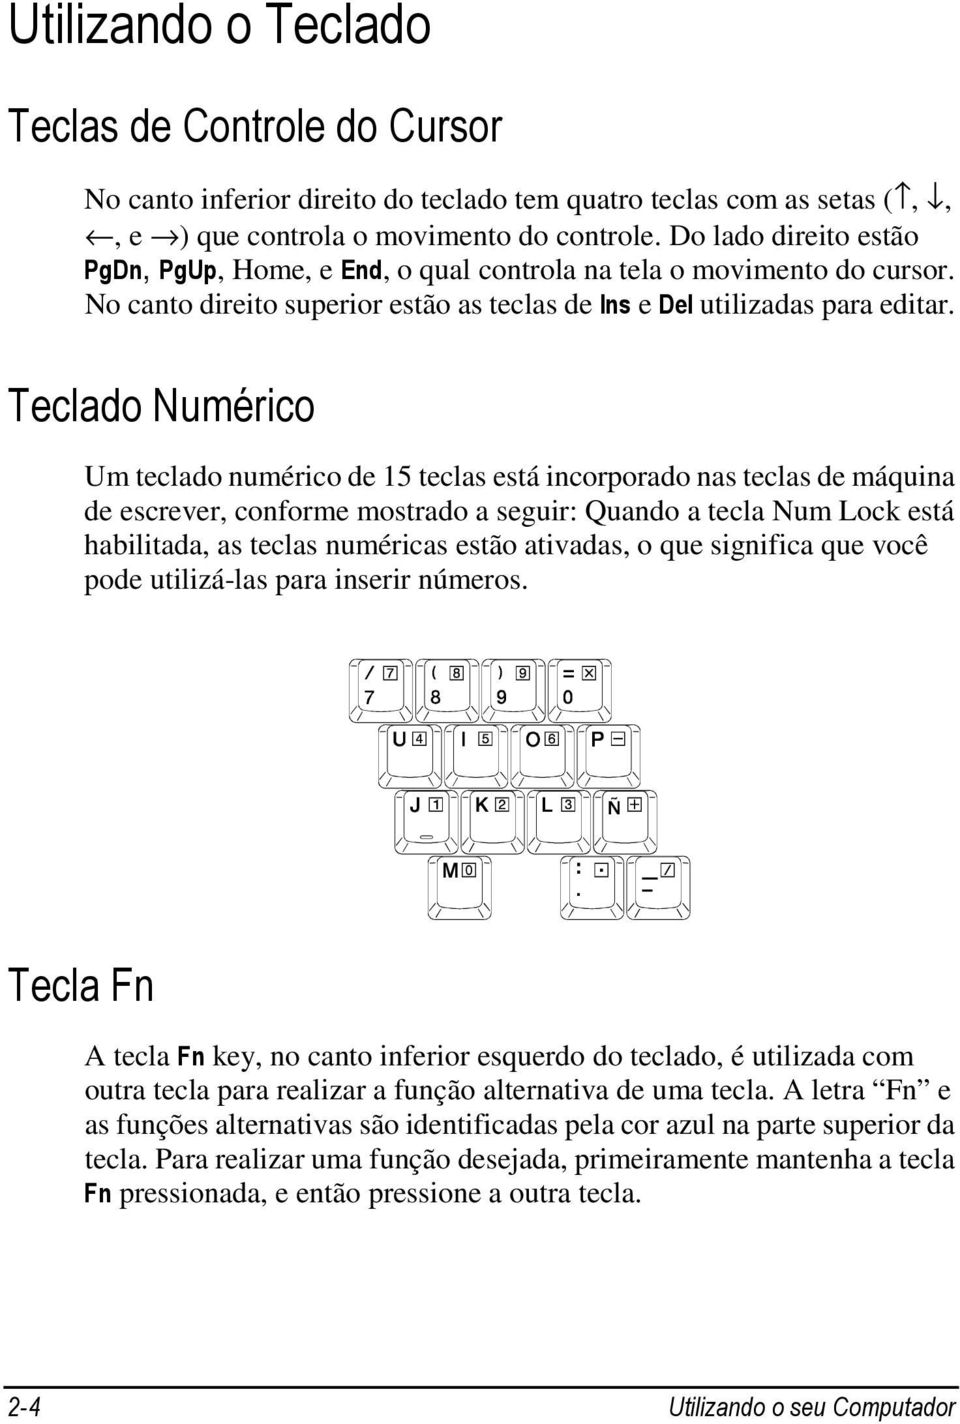 Teclado Numérico Um teclado numérico de 15 teclas está incorporado nas teclas de máquina de escrever, conforme mostrado a seguir: Quando a tecla Num Lock está habilitada, as teclas numéricas estão